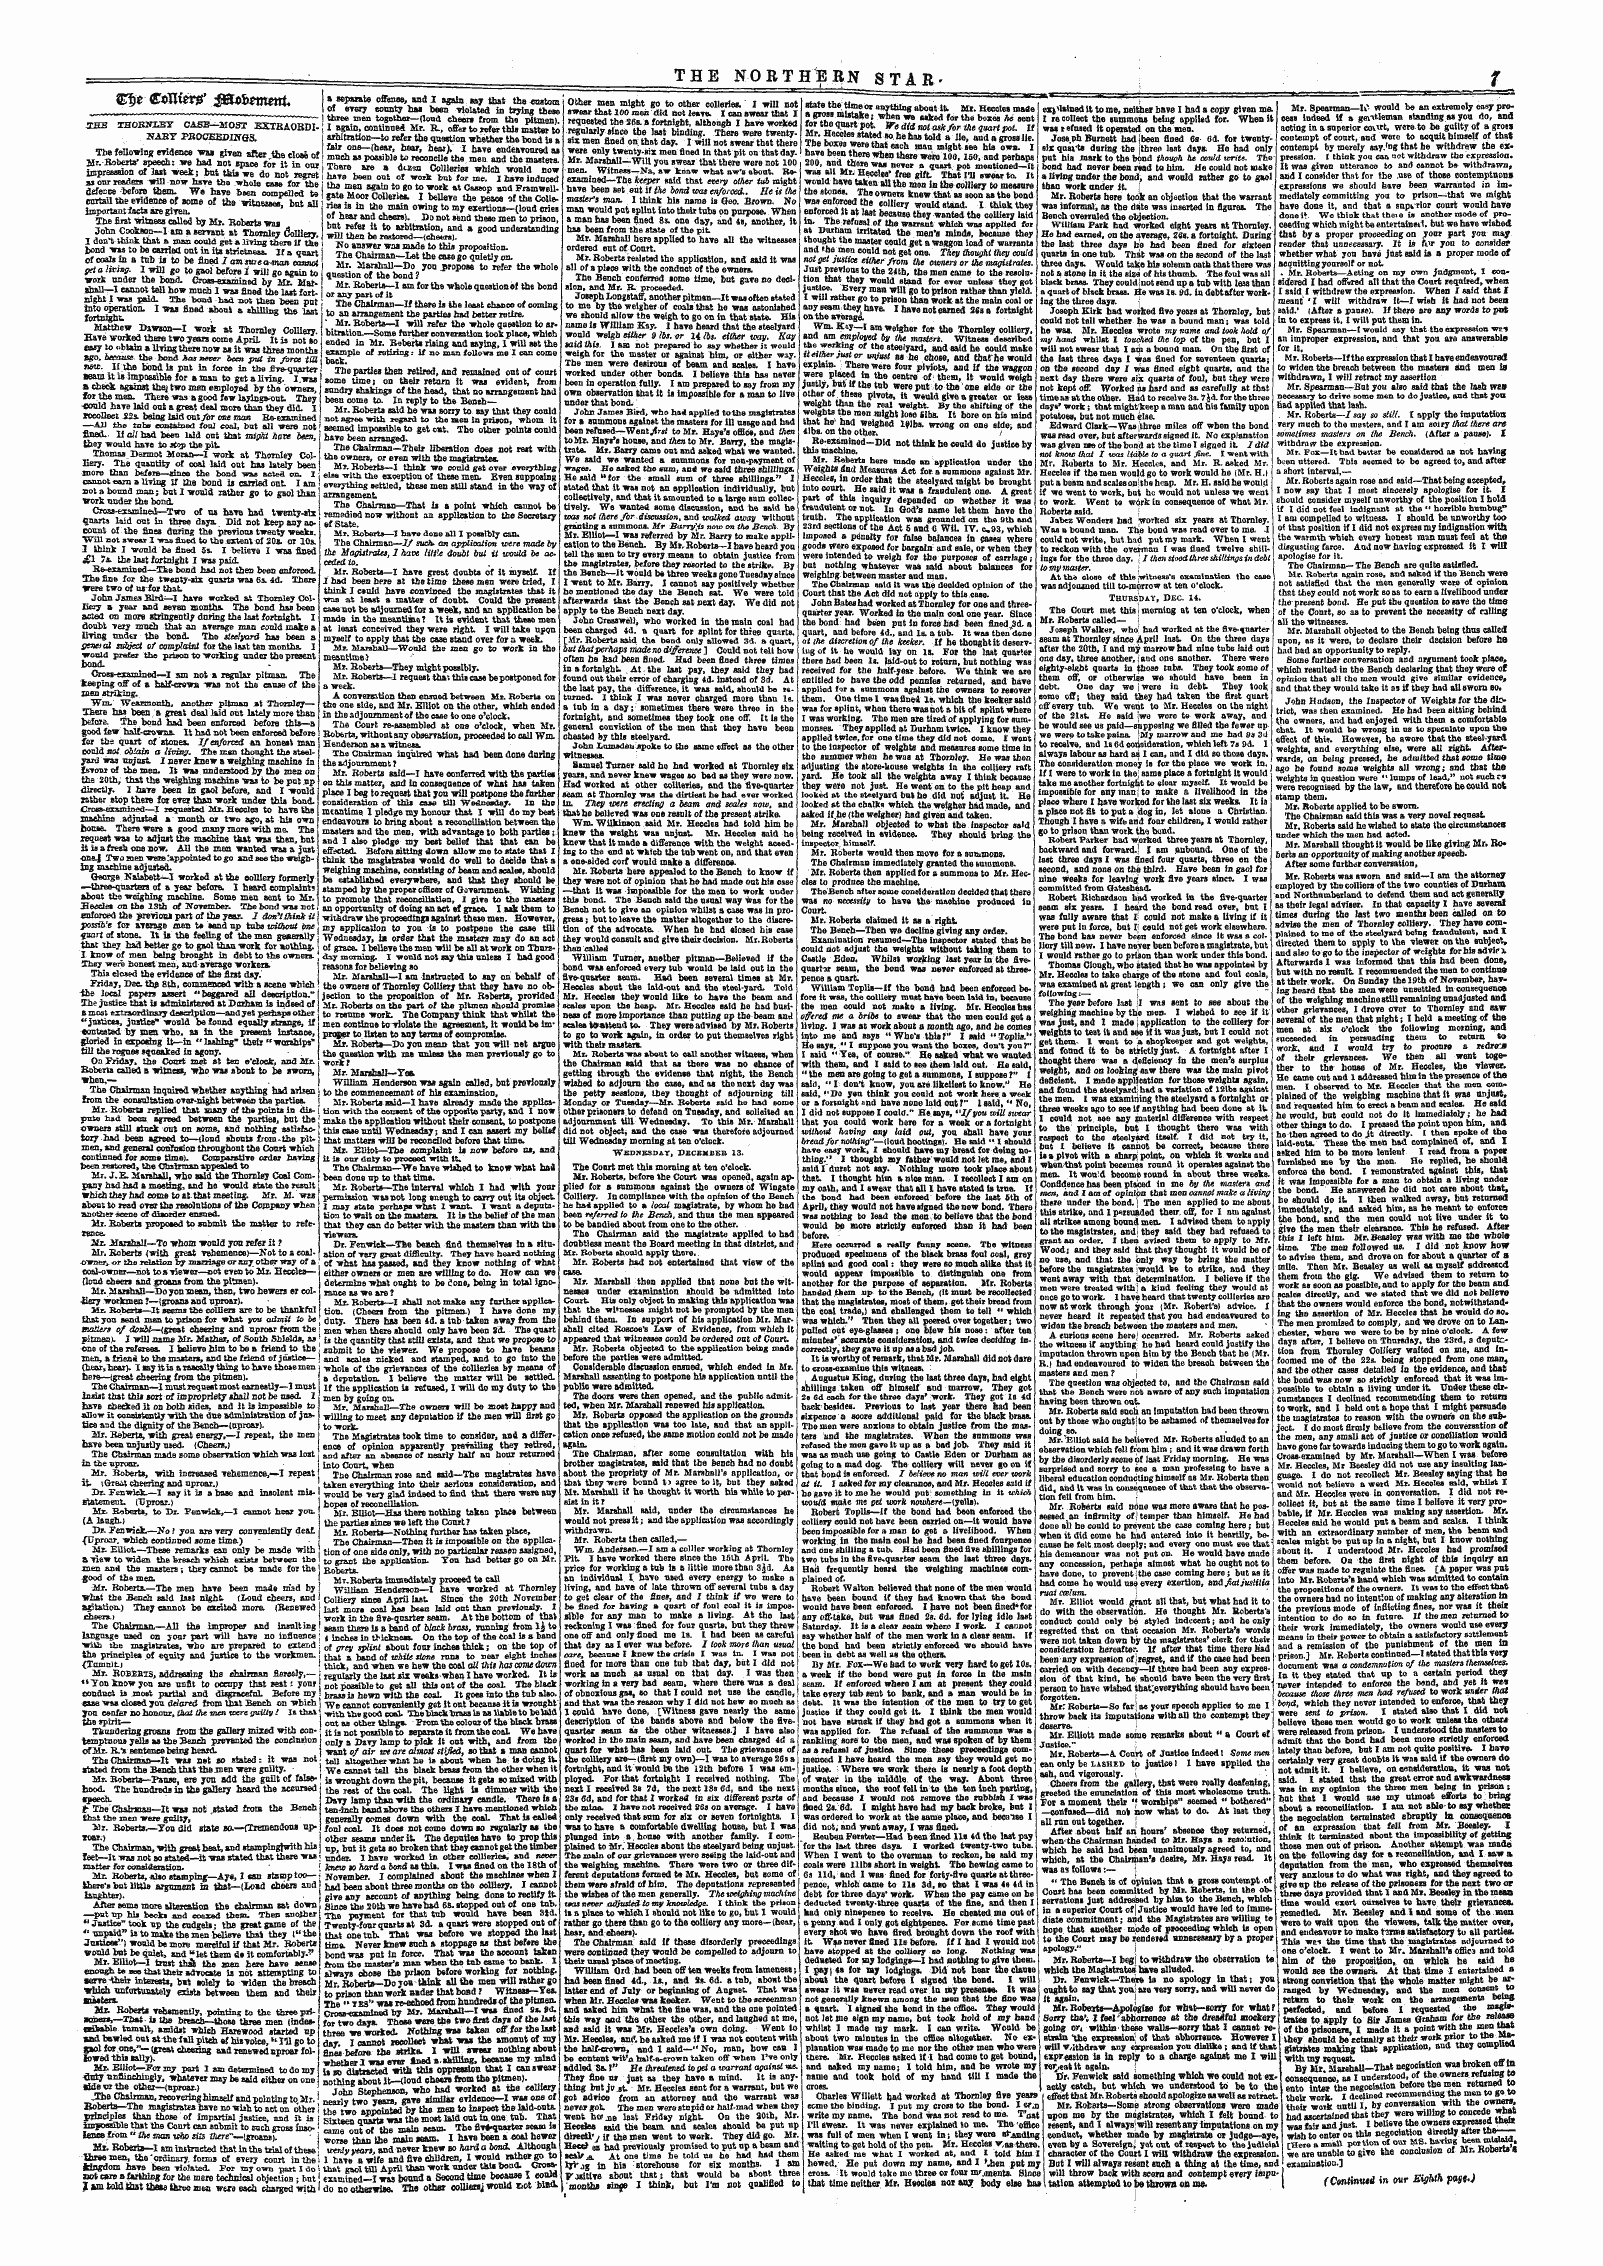 Northern Star (1837-1852): jS F Y, 5th edition - %%T €Txlut^ $Bwbmm.